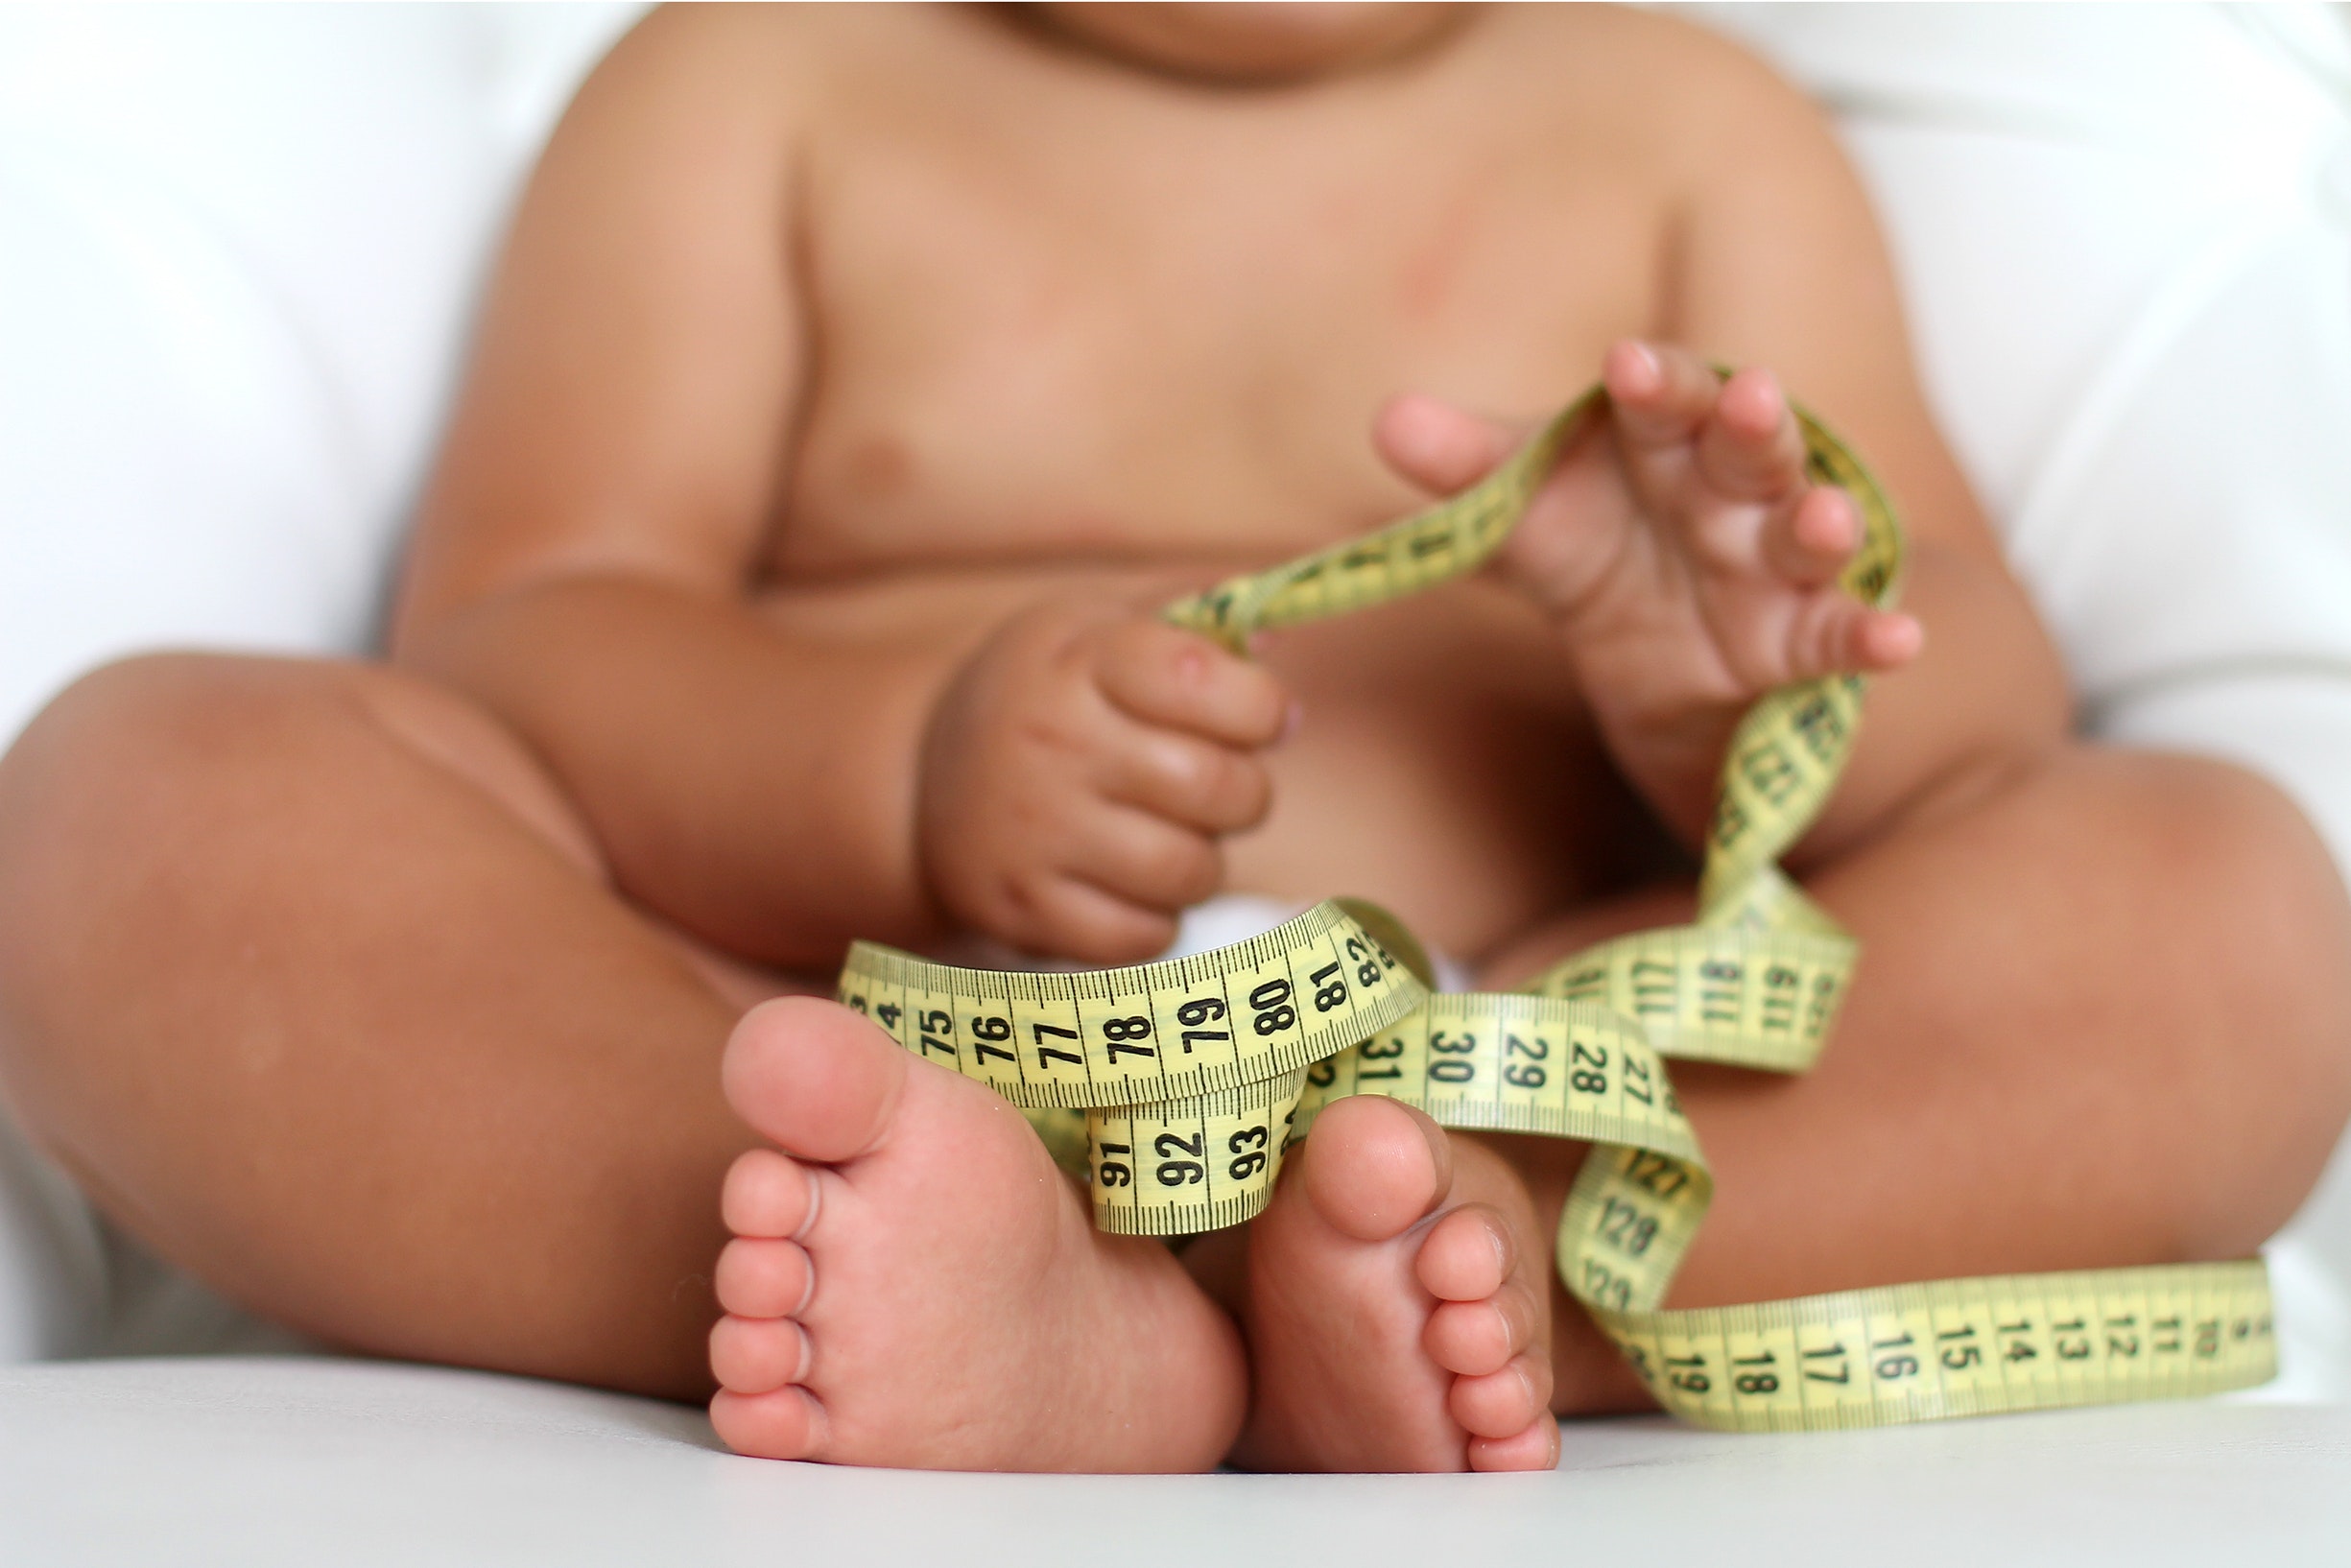 Увеличение массы тела ребенка